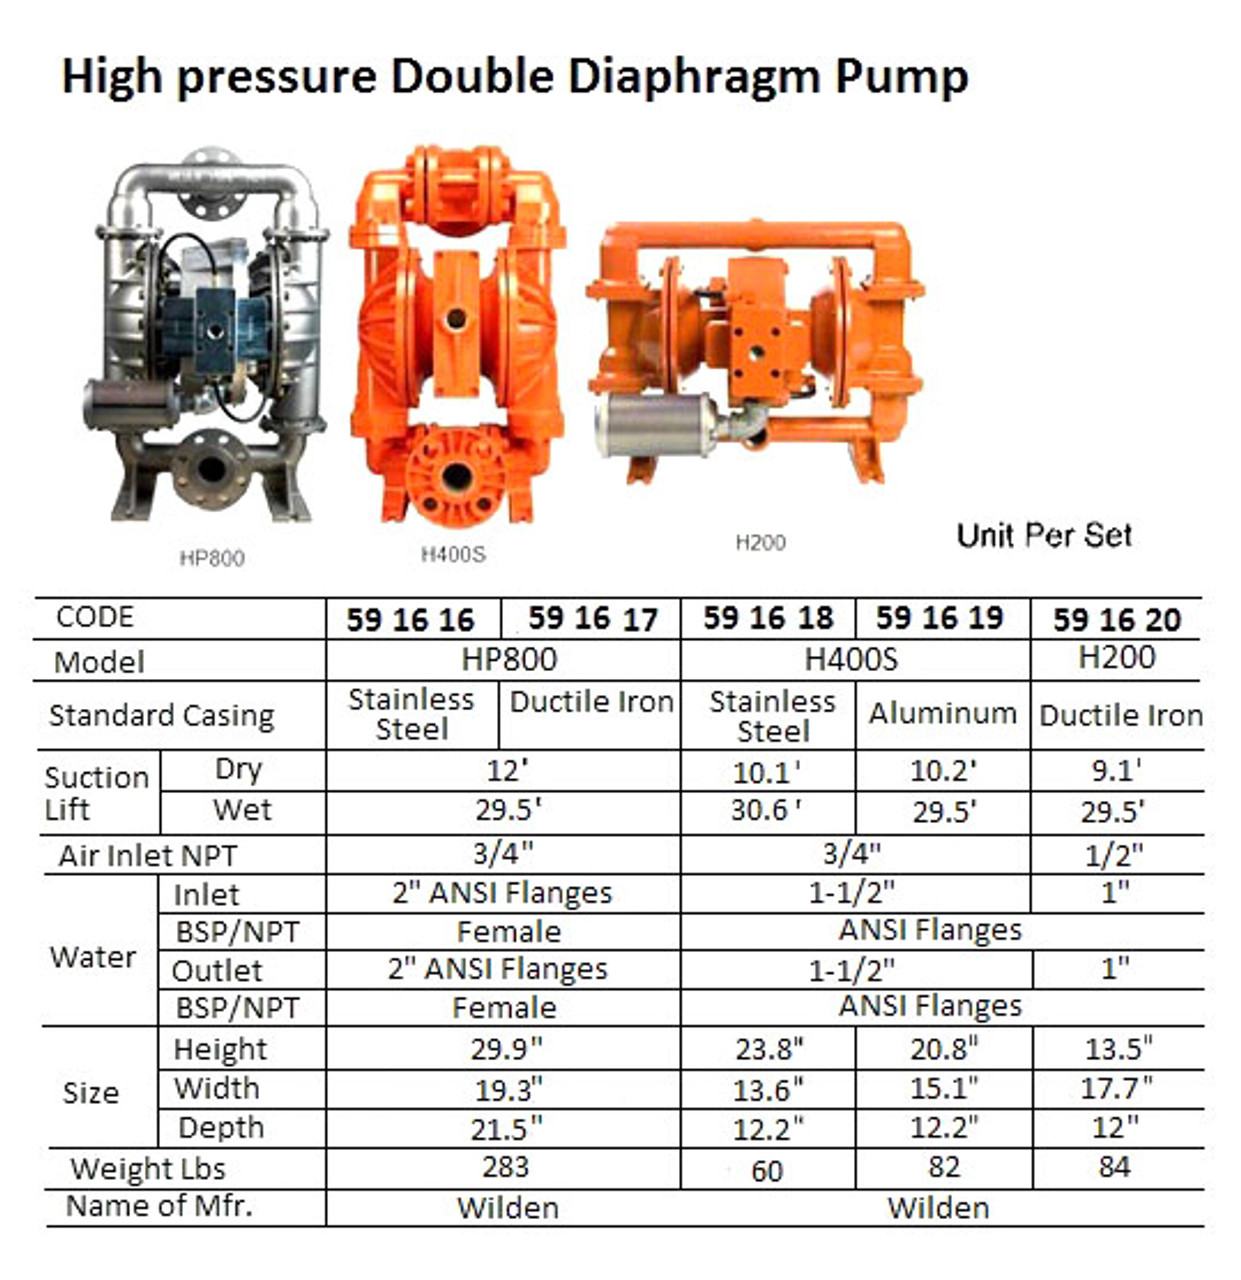 IMPA 591619 Diaphragm pump high pressure 1 1/2" - ATEX explosion proof Wilden XHX400S aluminium / wilflex - NO STOCK